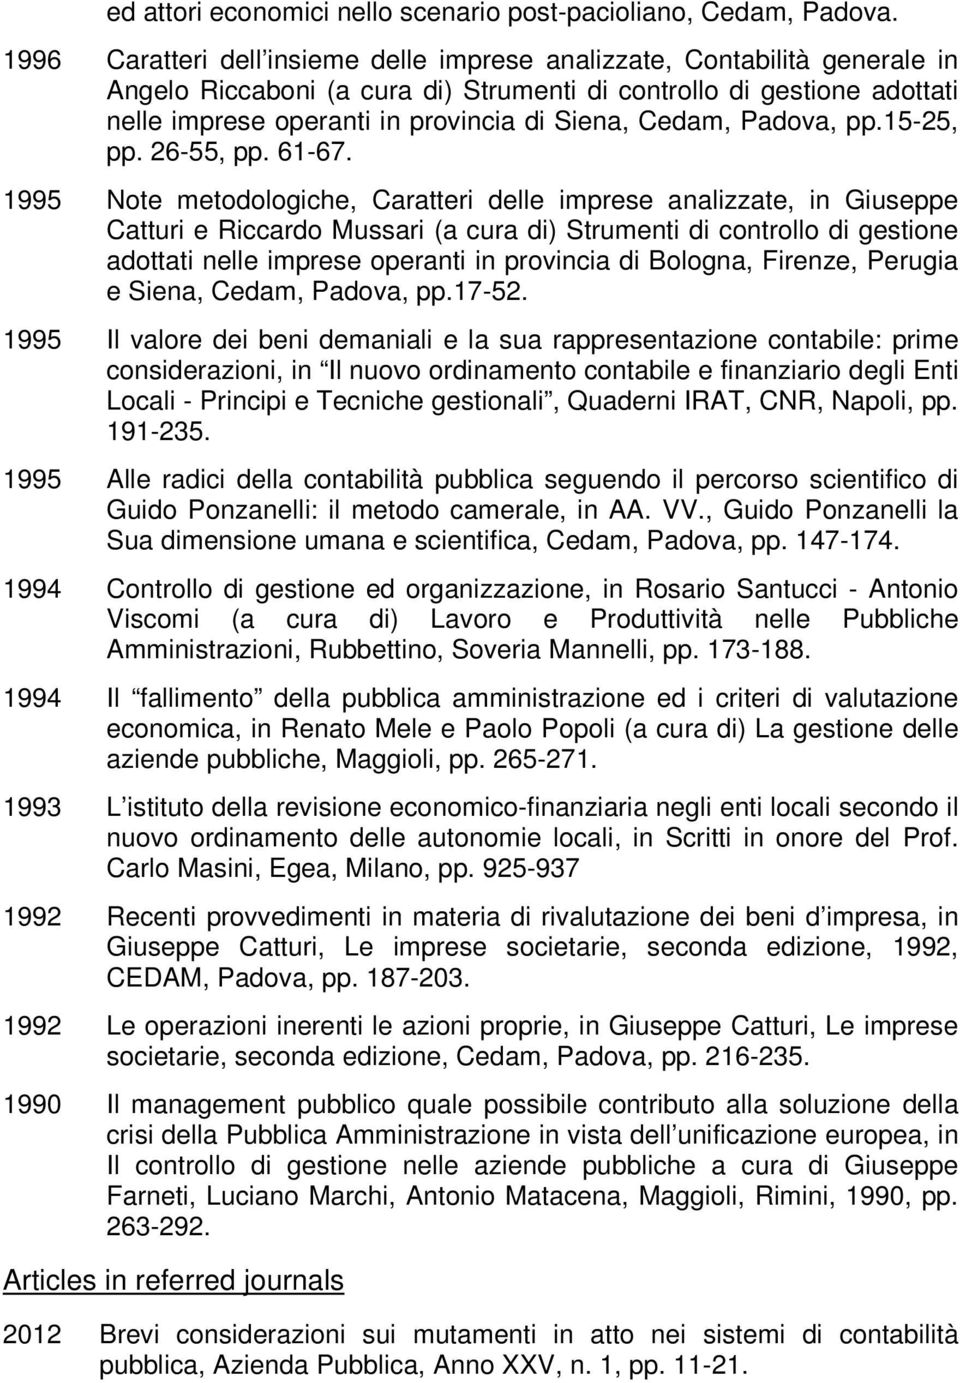 Cedam, Padova, pp.15-25, pp. 26-55, pp. 61-67.